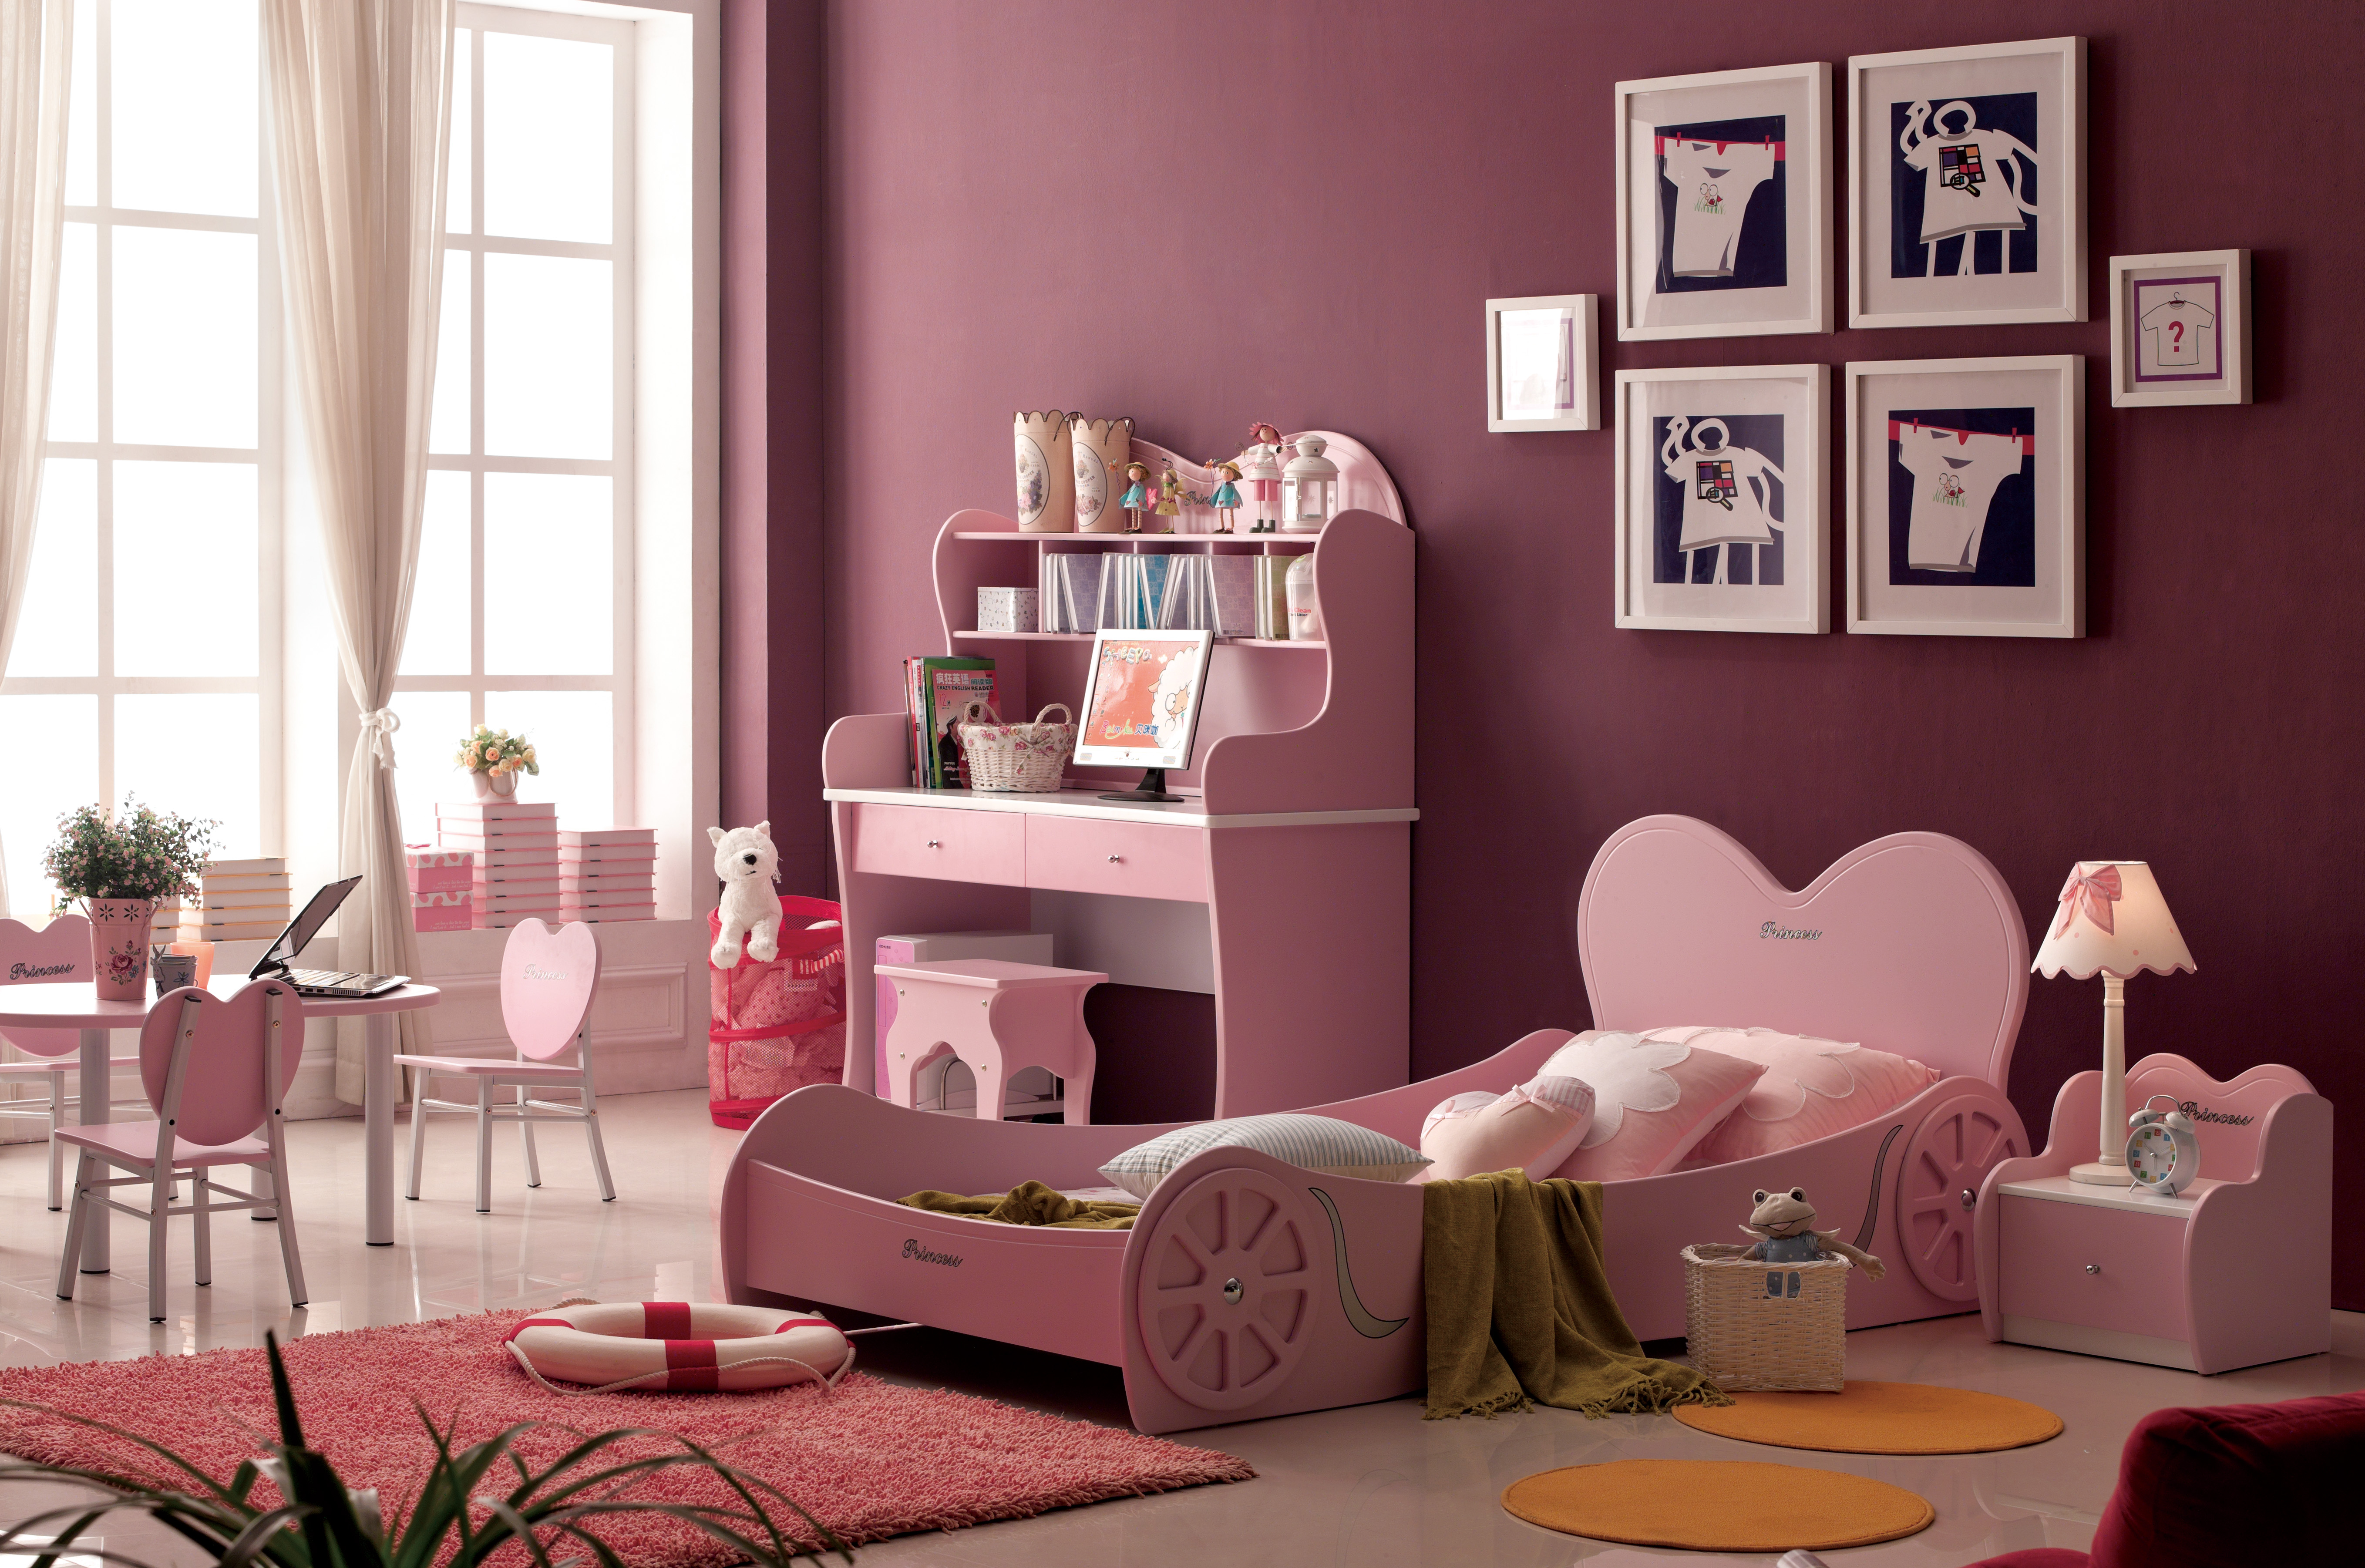 Кровать карета Любимая Принцесса, материал МДФ, цвет розовый, размер ложа 190х90 см